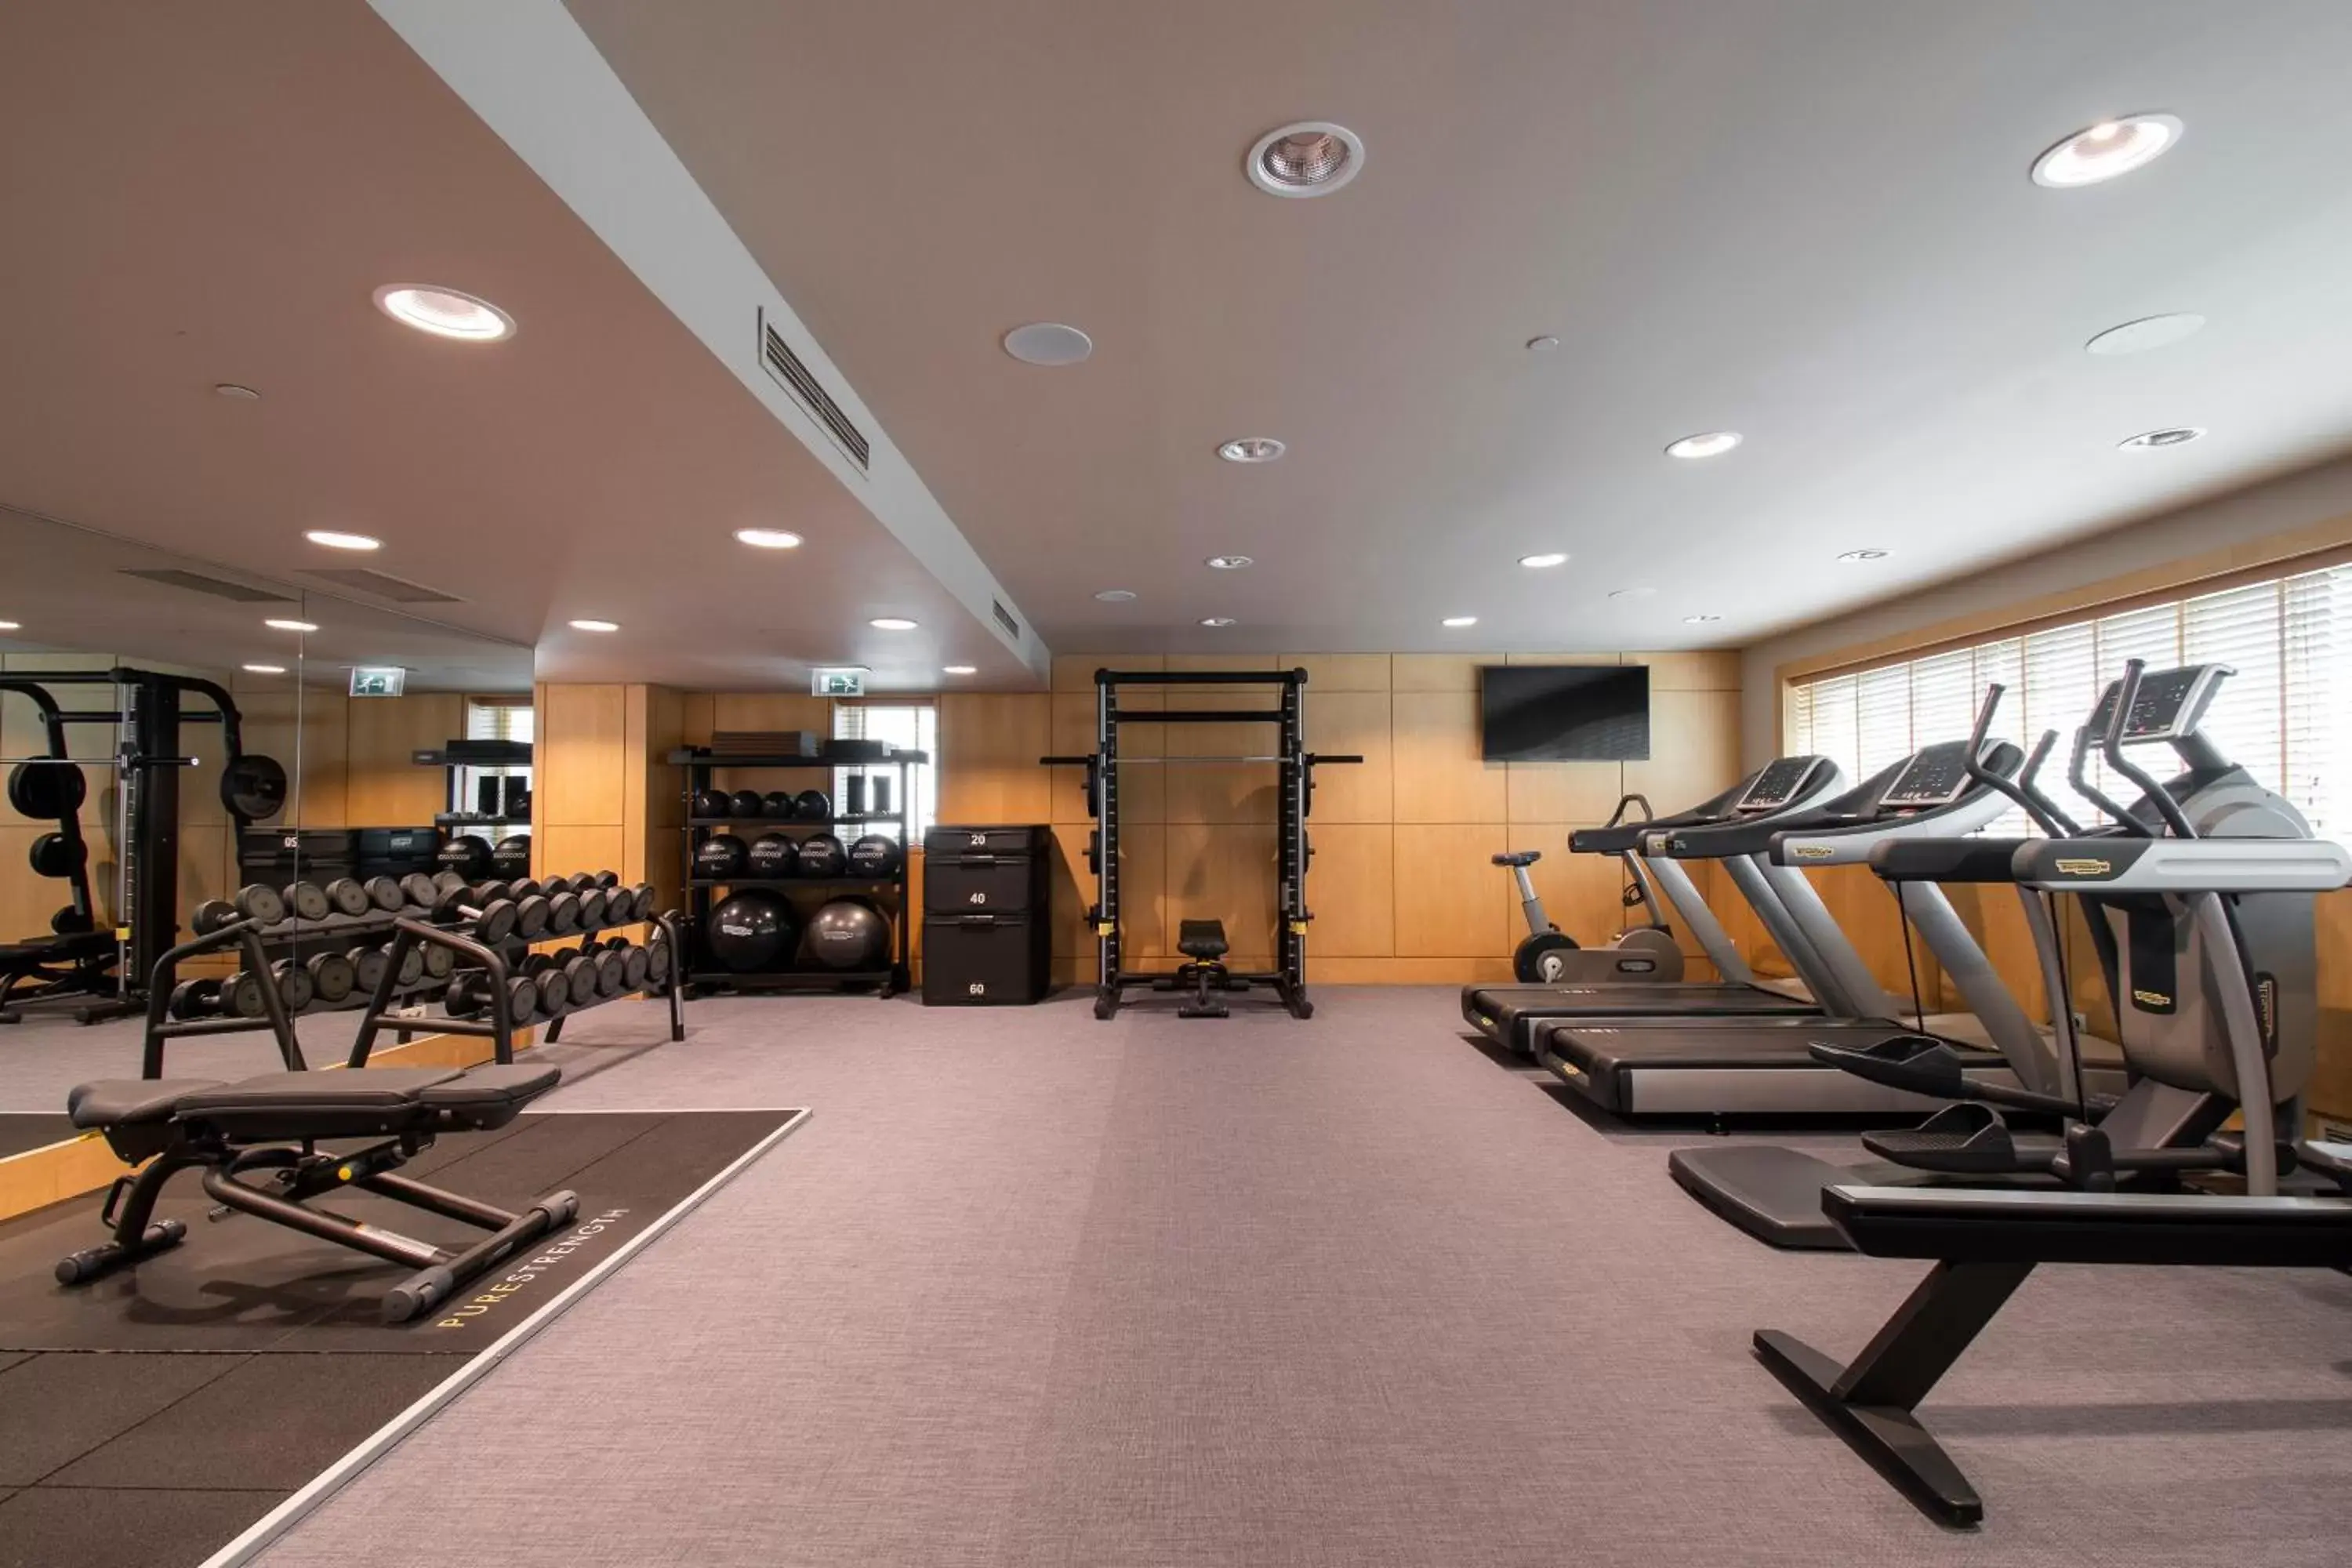 Fitness centre/facilities, Fitness Center/Facilities in SANA Malhoa Hotel